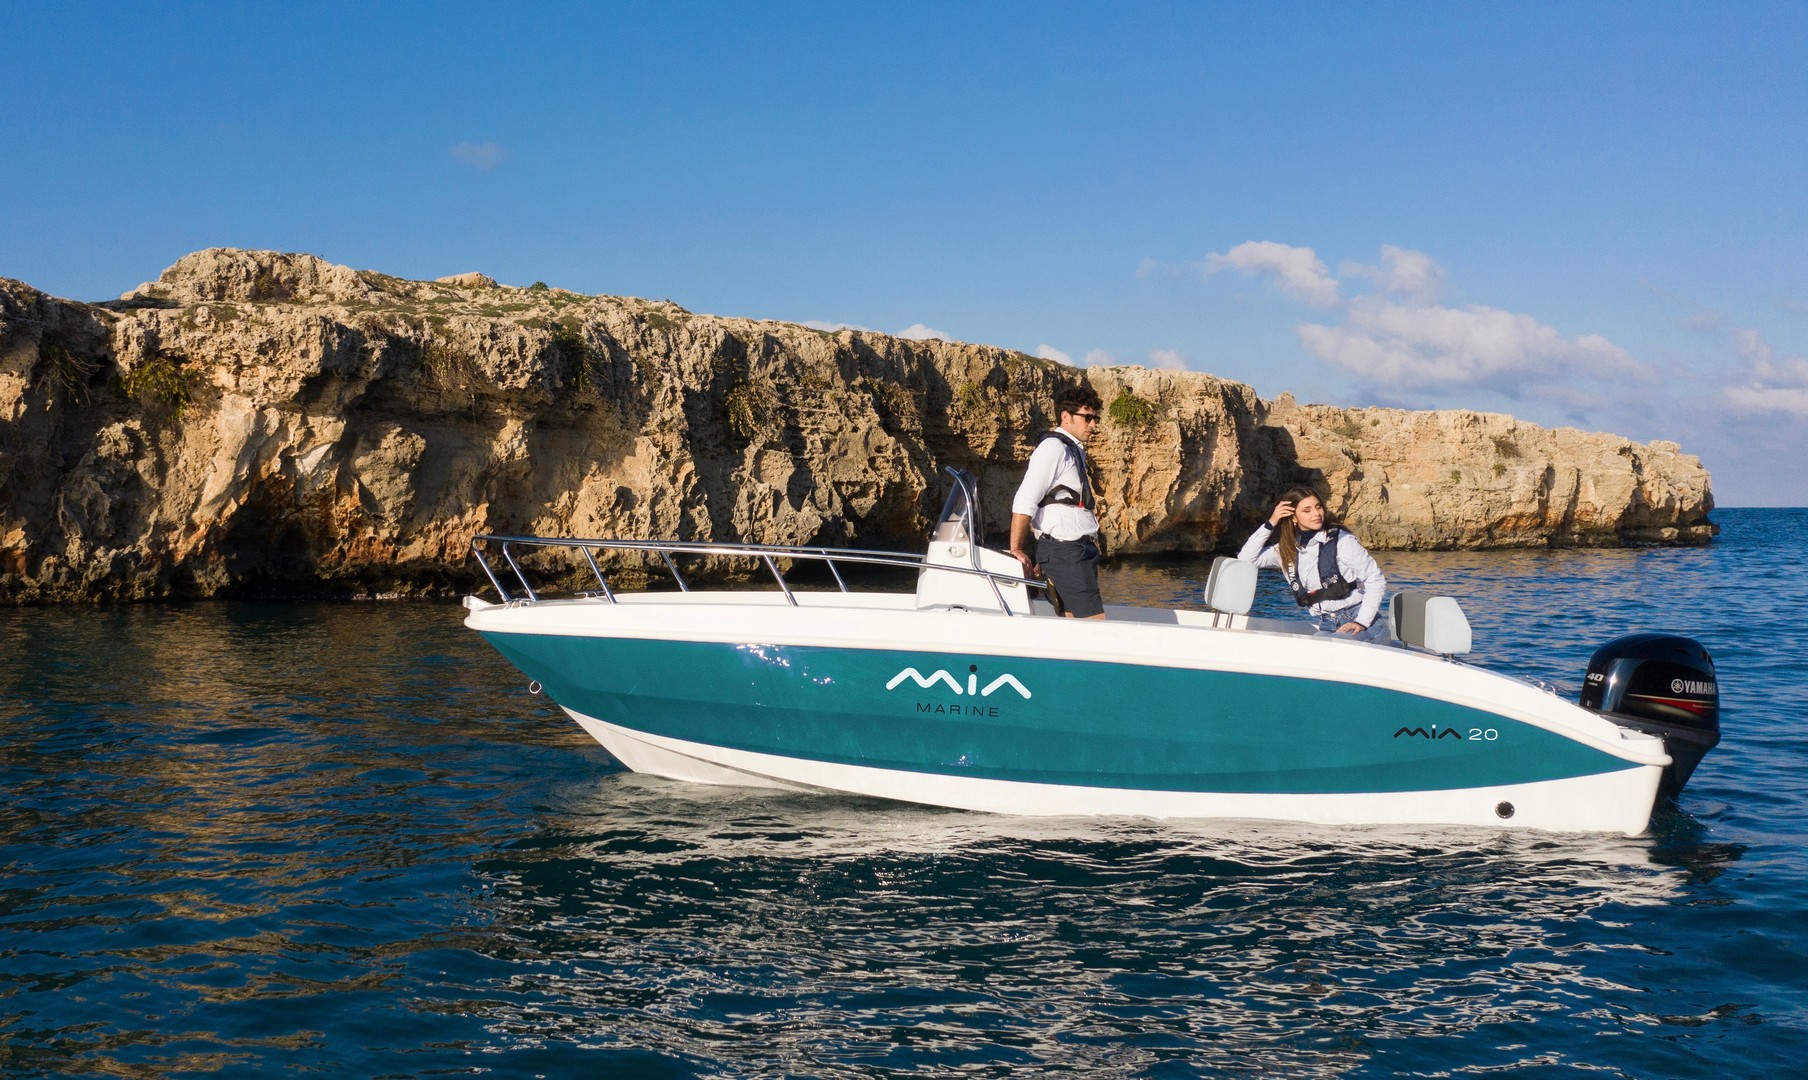 Barca Mia 18, del cantiere Mia Marine costruita in esclusiva per essere motorizzata con i fuoibordo Yamaha.